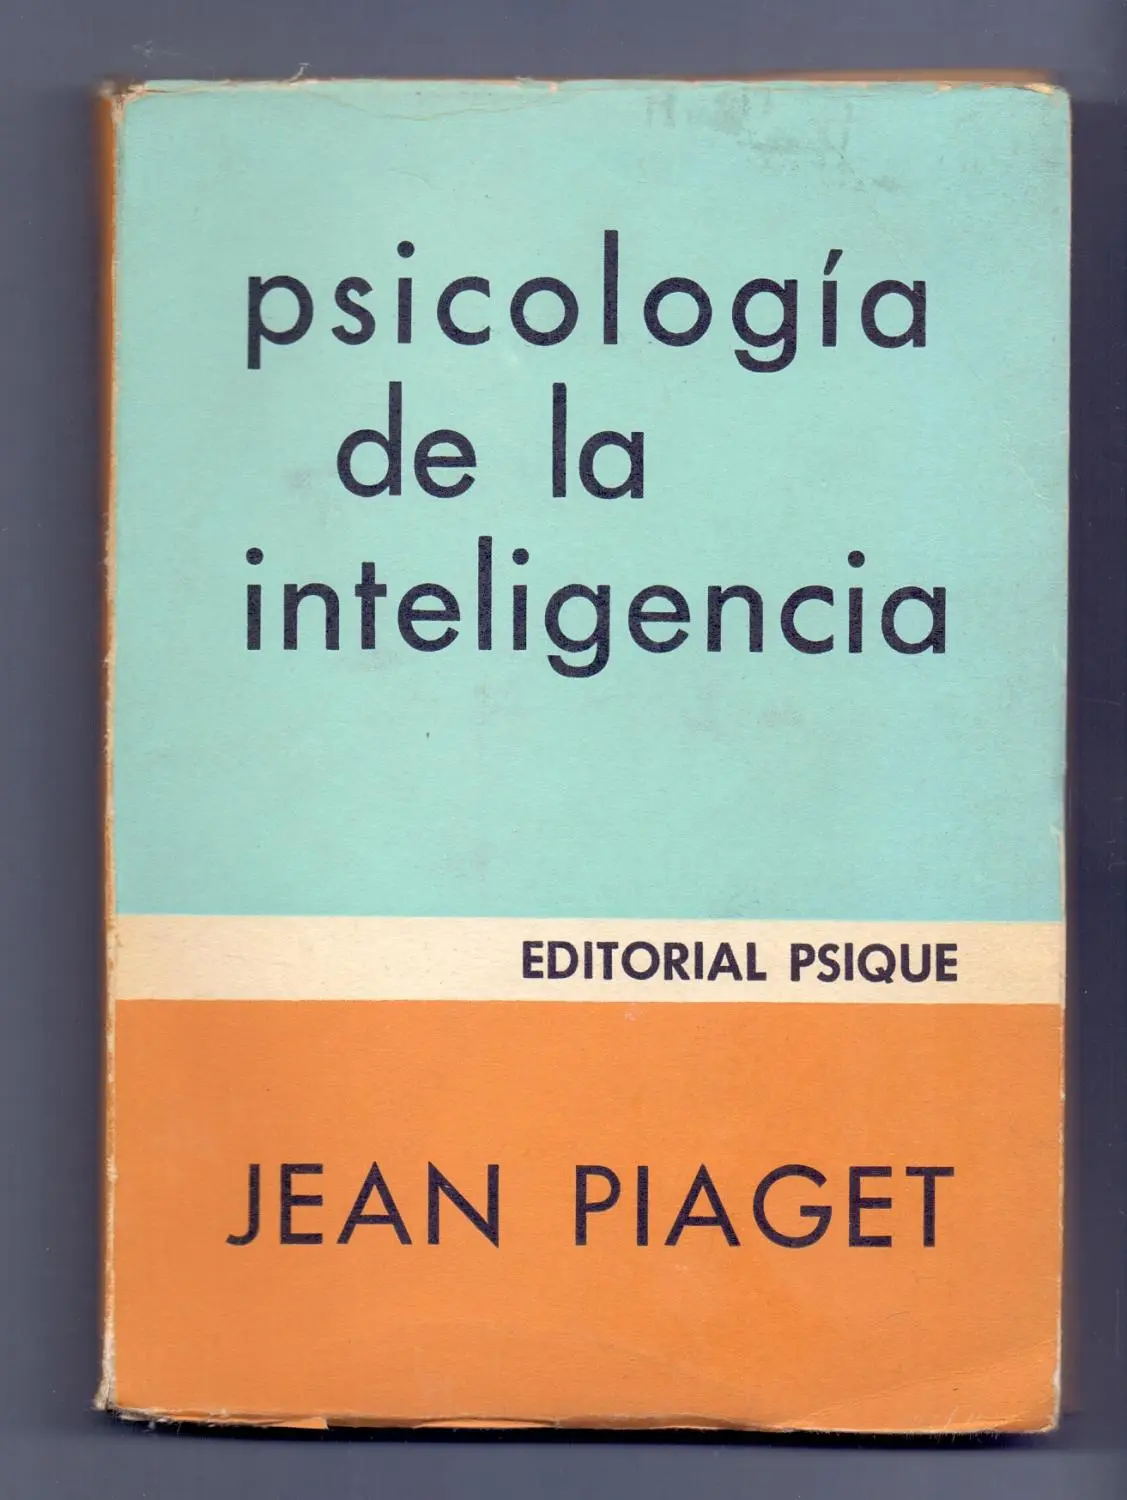 psicologia de la inteligencia piaget - Qué dice Piaget sobre la inteligencia